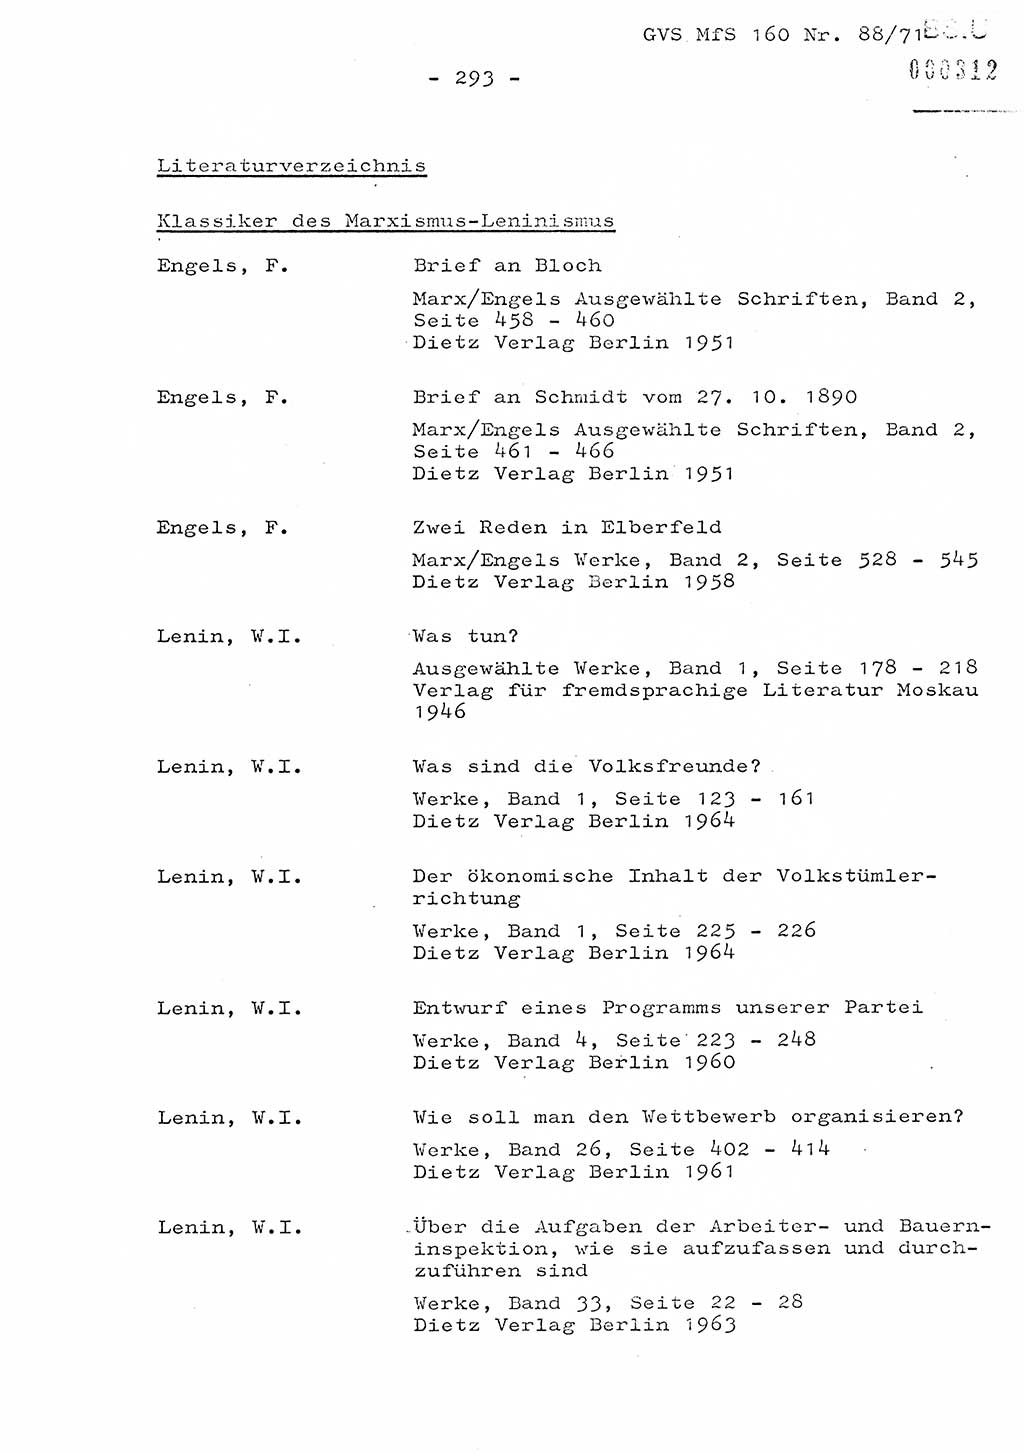 Dissertation Oberstleutnant Josef Schwarz (BV Schwerin), Major Fritz Amm (JHS), Hauptmann Peter Gräßler (JHS), Ministerium für Staatssicherheit (MfS) [Deutsche Demokratische Republik (DDR)], Juristische Hochschule (JHS), Geheime Verschlußsache (GVS) 160-88/71, Potsdam 1972, Seite 293 (Diss. MfS DDR JHS GVS 160-88/71 1972, S. 293)